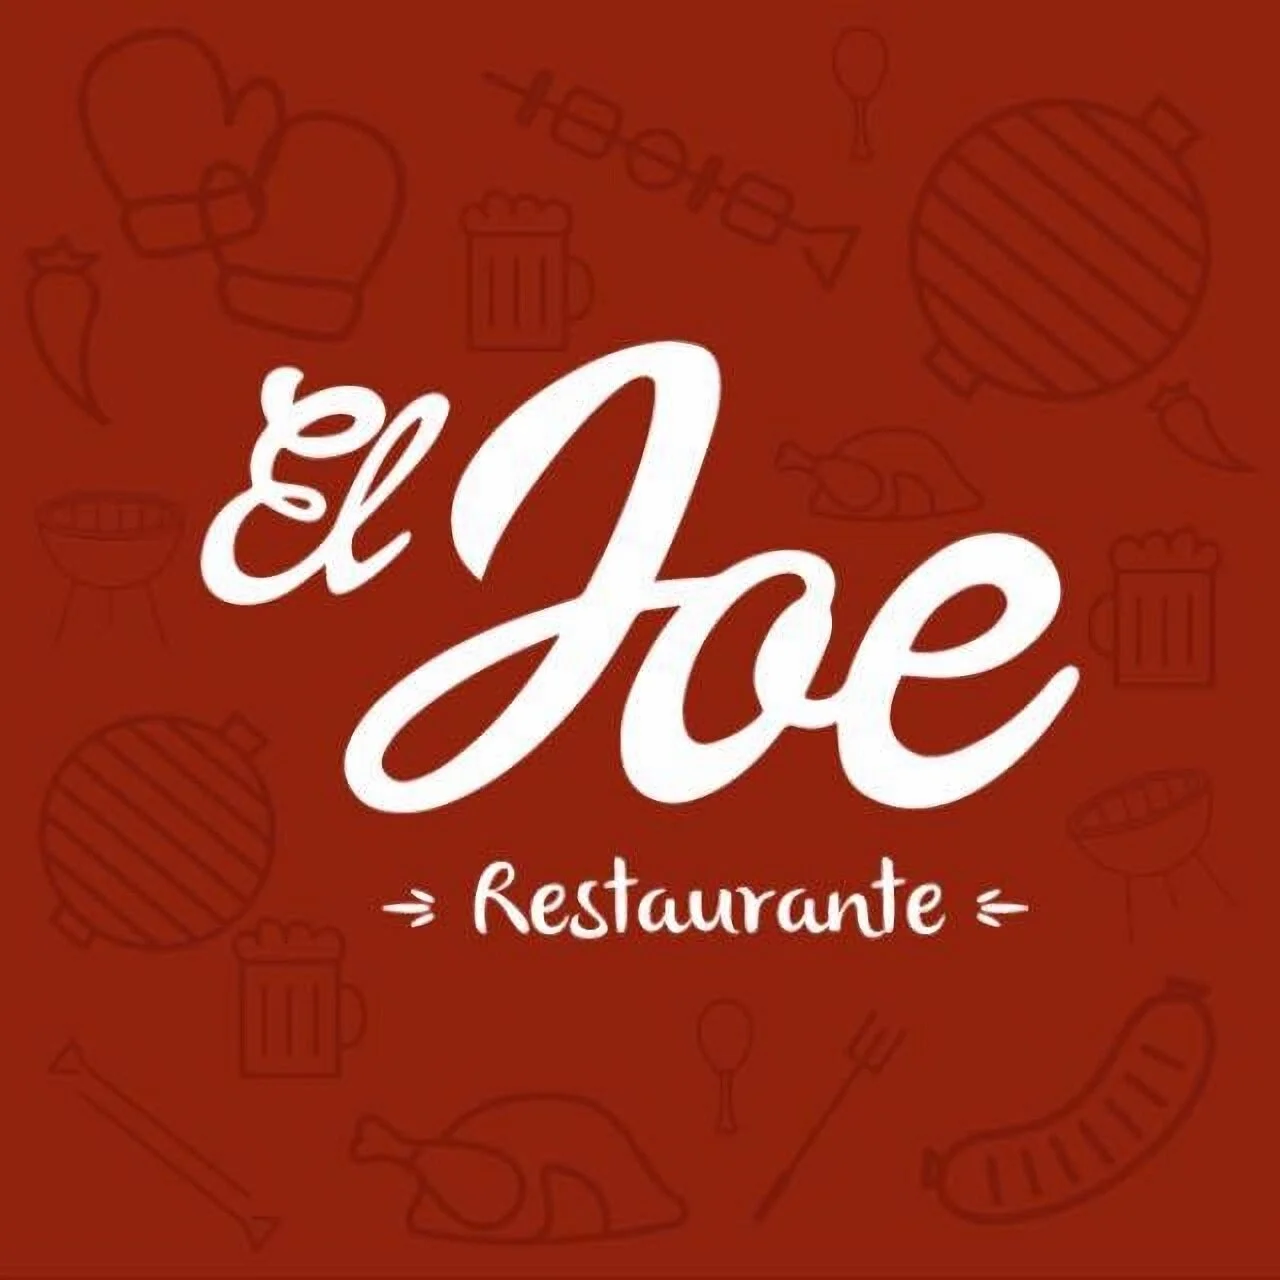 Restaurante-restaurante-el-joe-23622